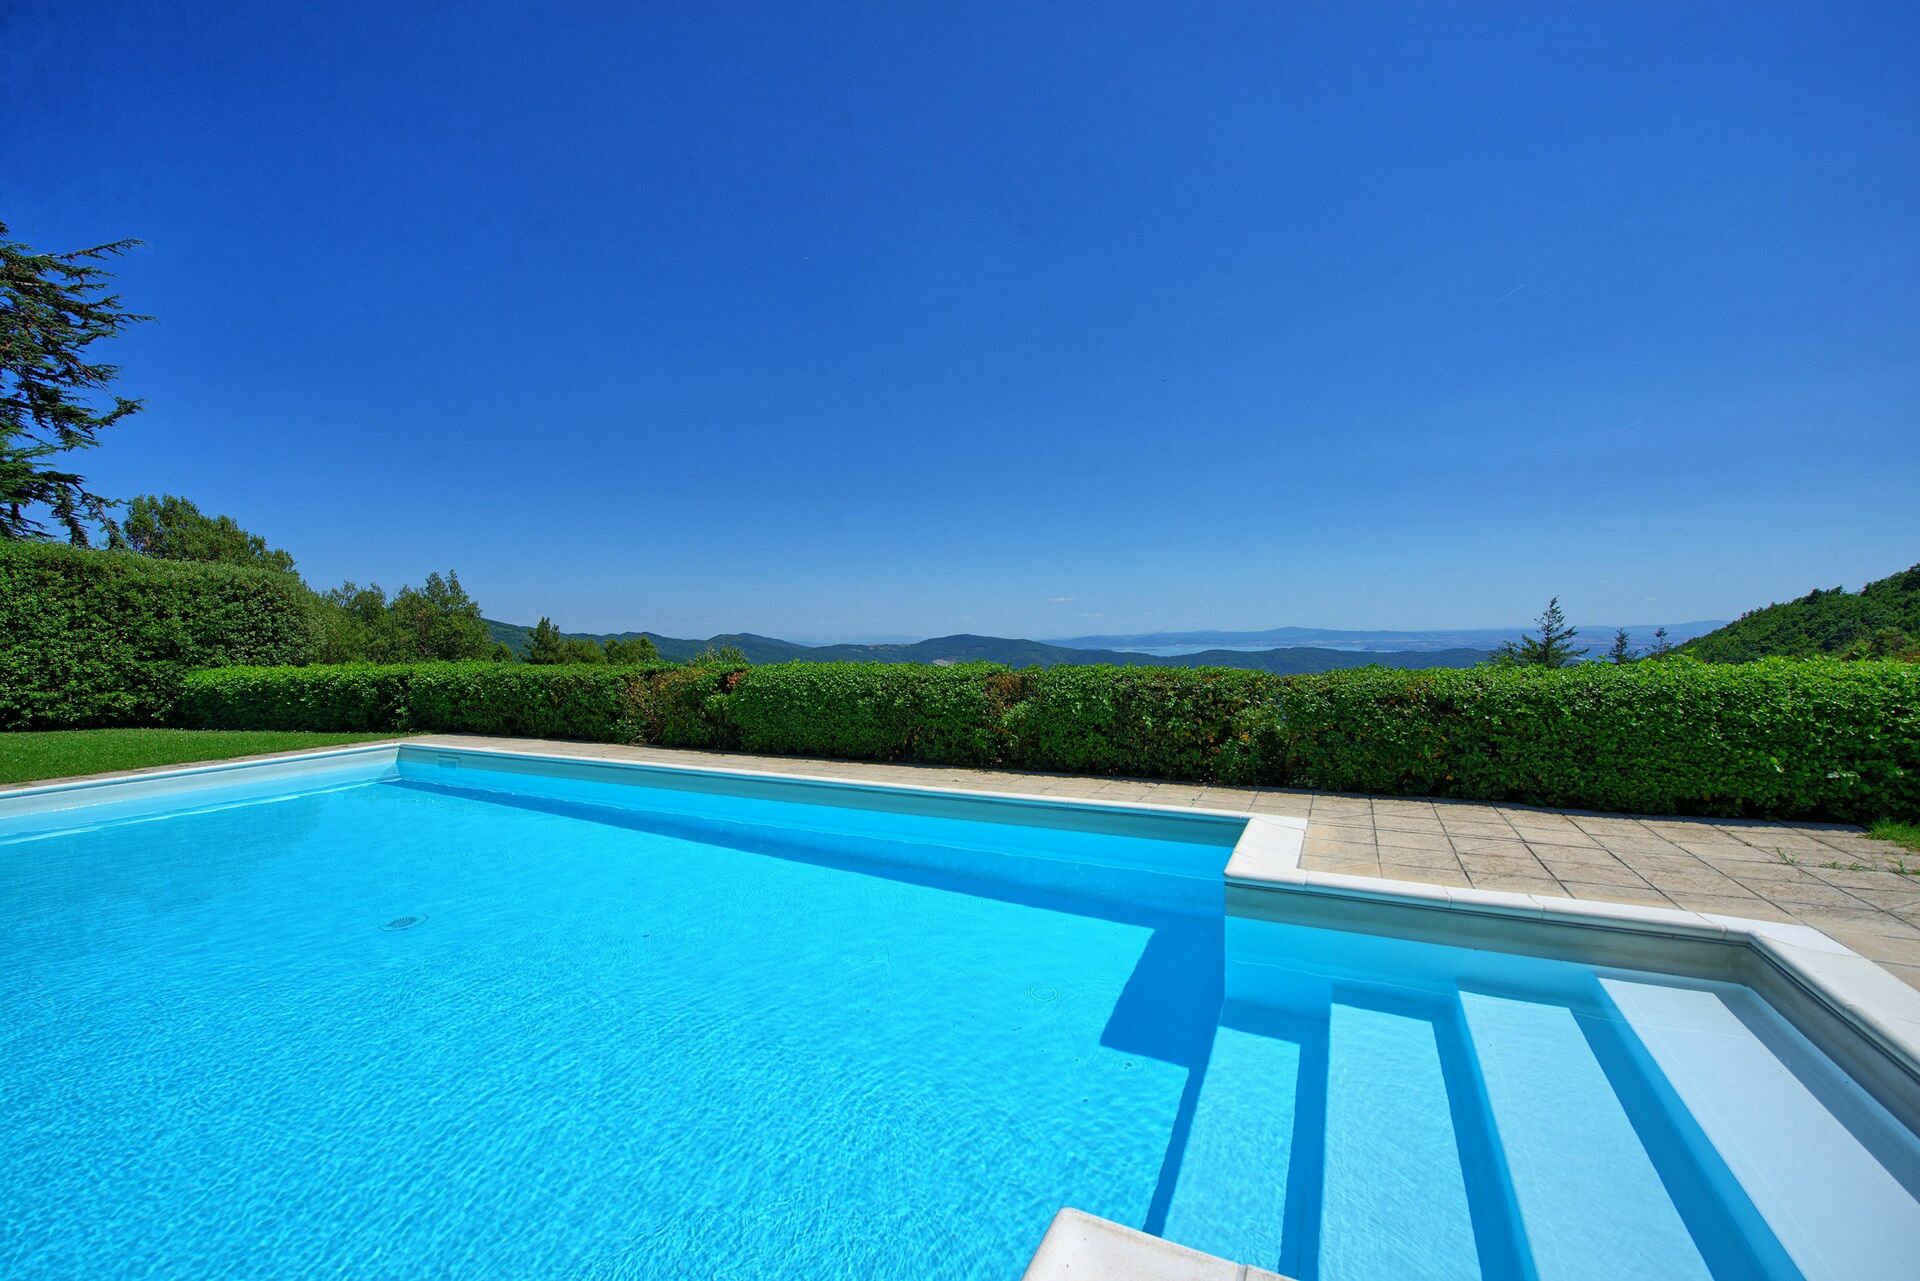 Tuscany vacation rentals (Villa or house)